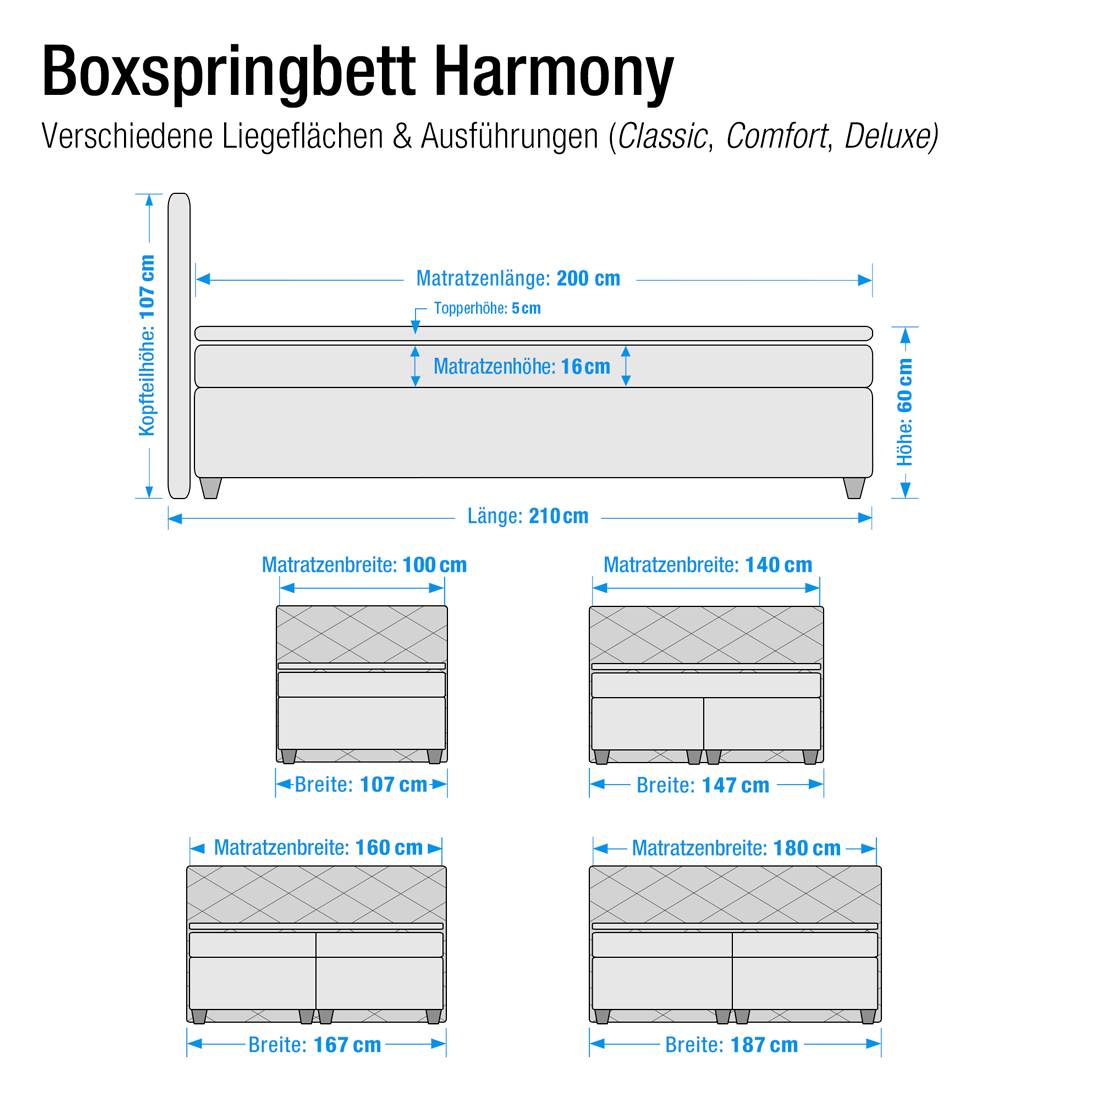 Boxspring Harmony Kopen axzPTNCv